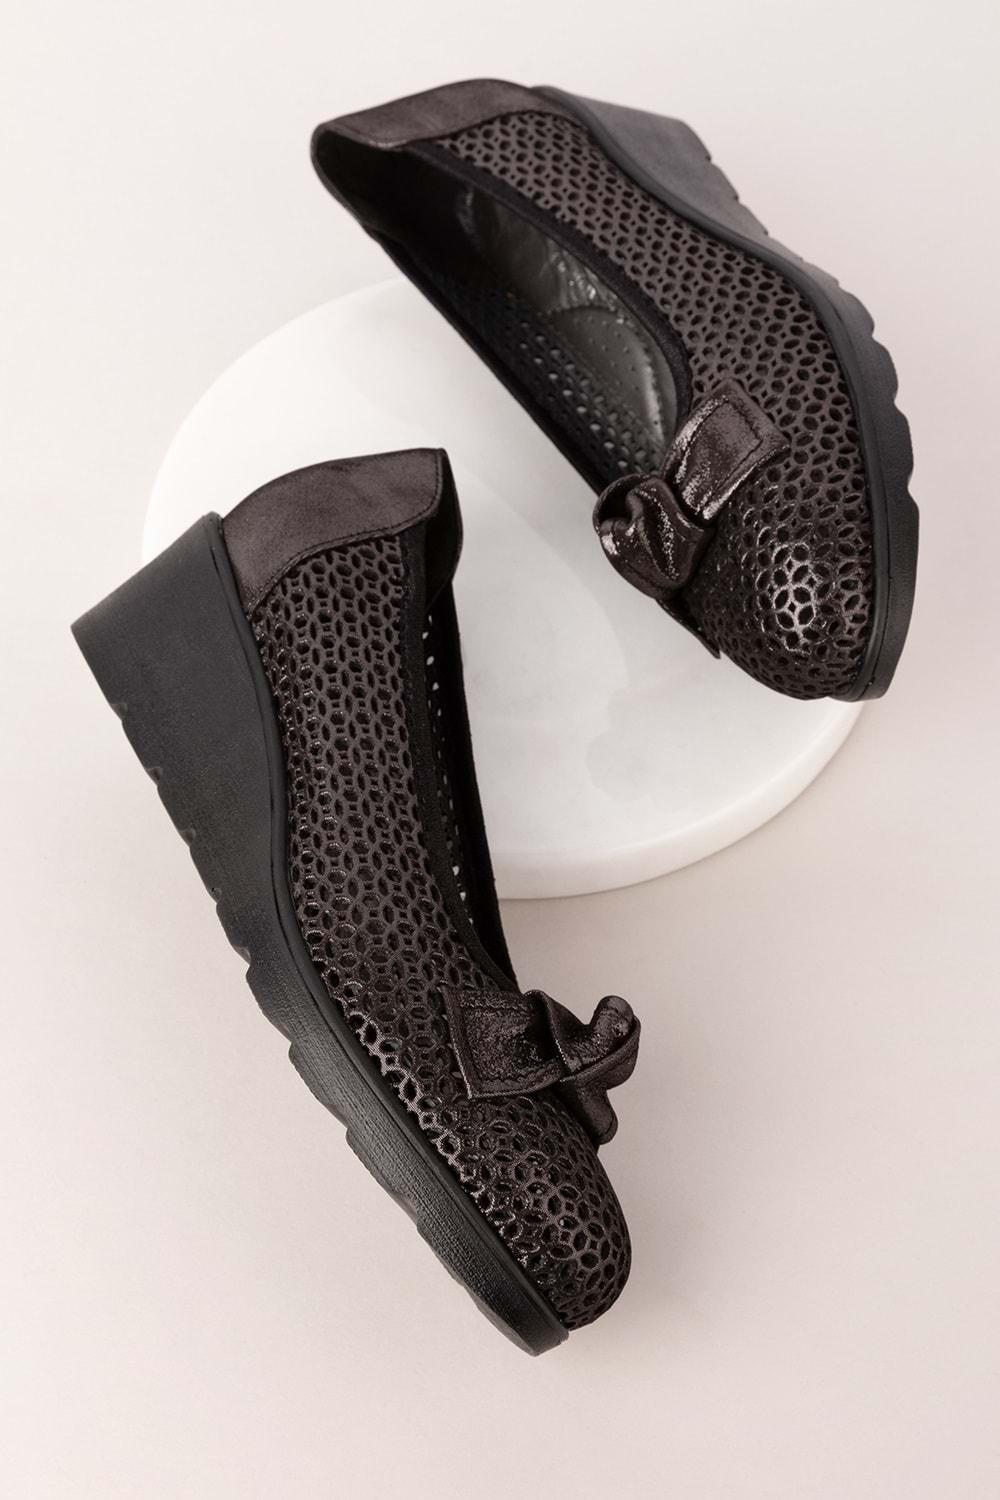 Gondol Kadın Hakiki Deri Dolgu Topuk Rahat Şık Anne Ayakkabısı ell.6189 - Siyah Sim - 40